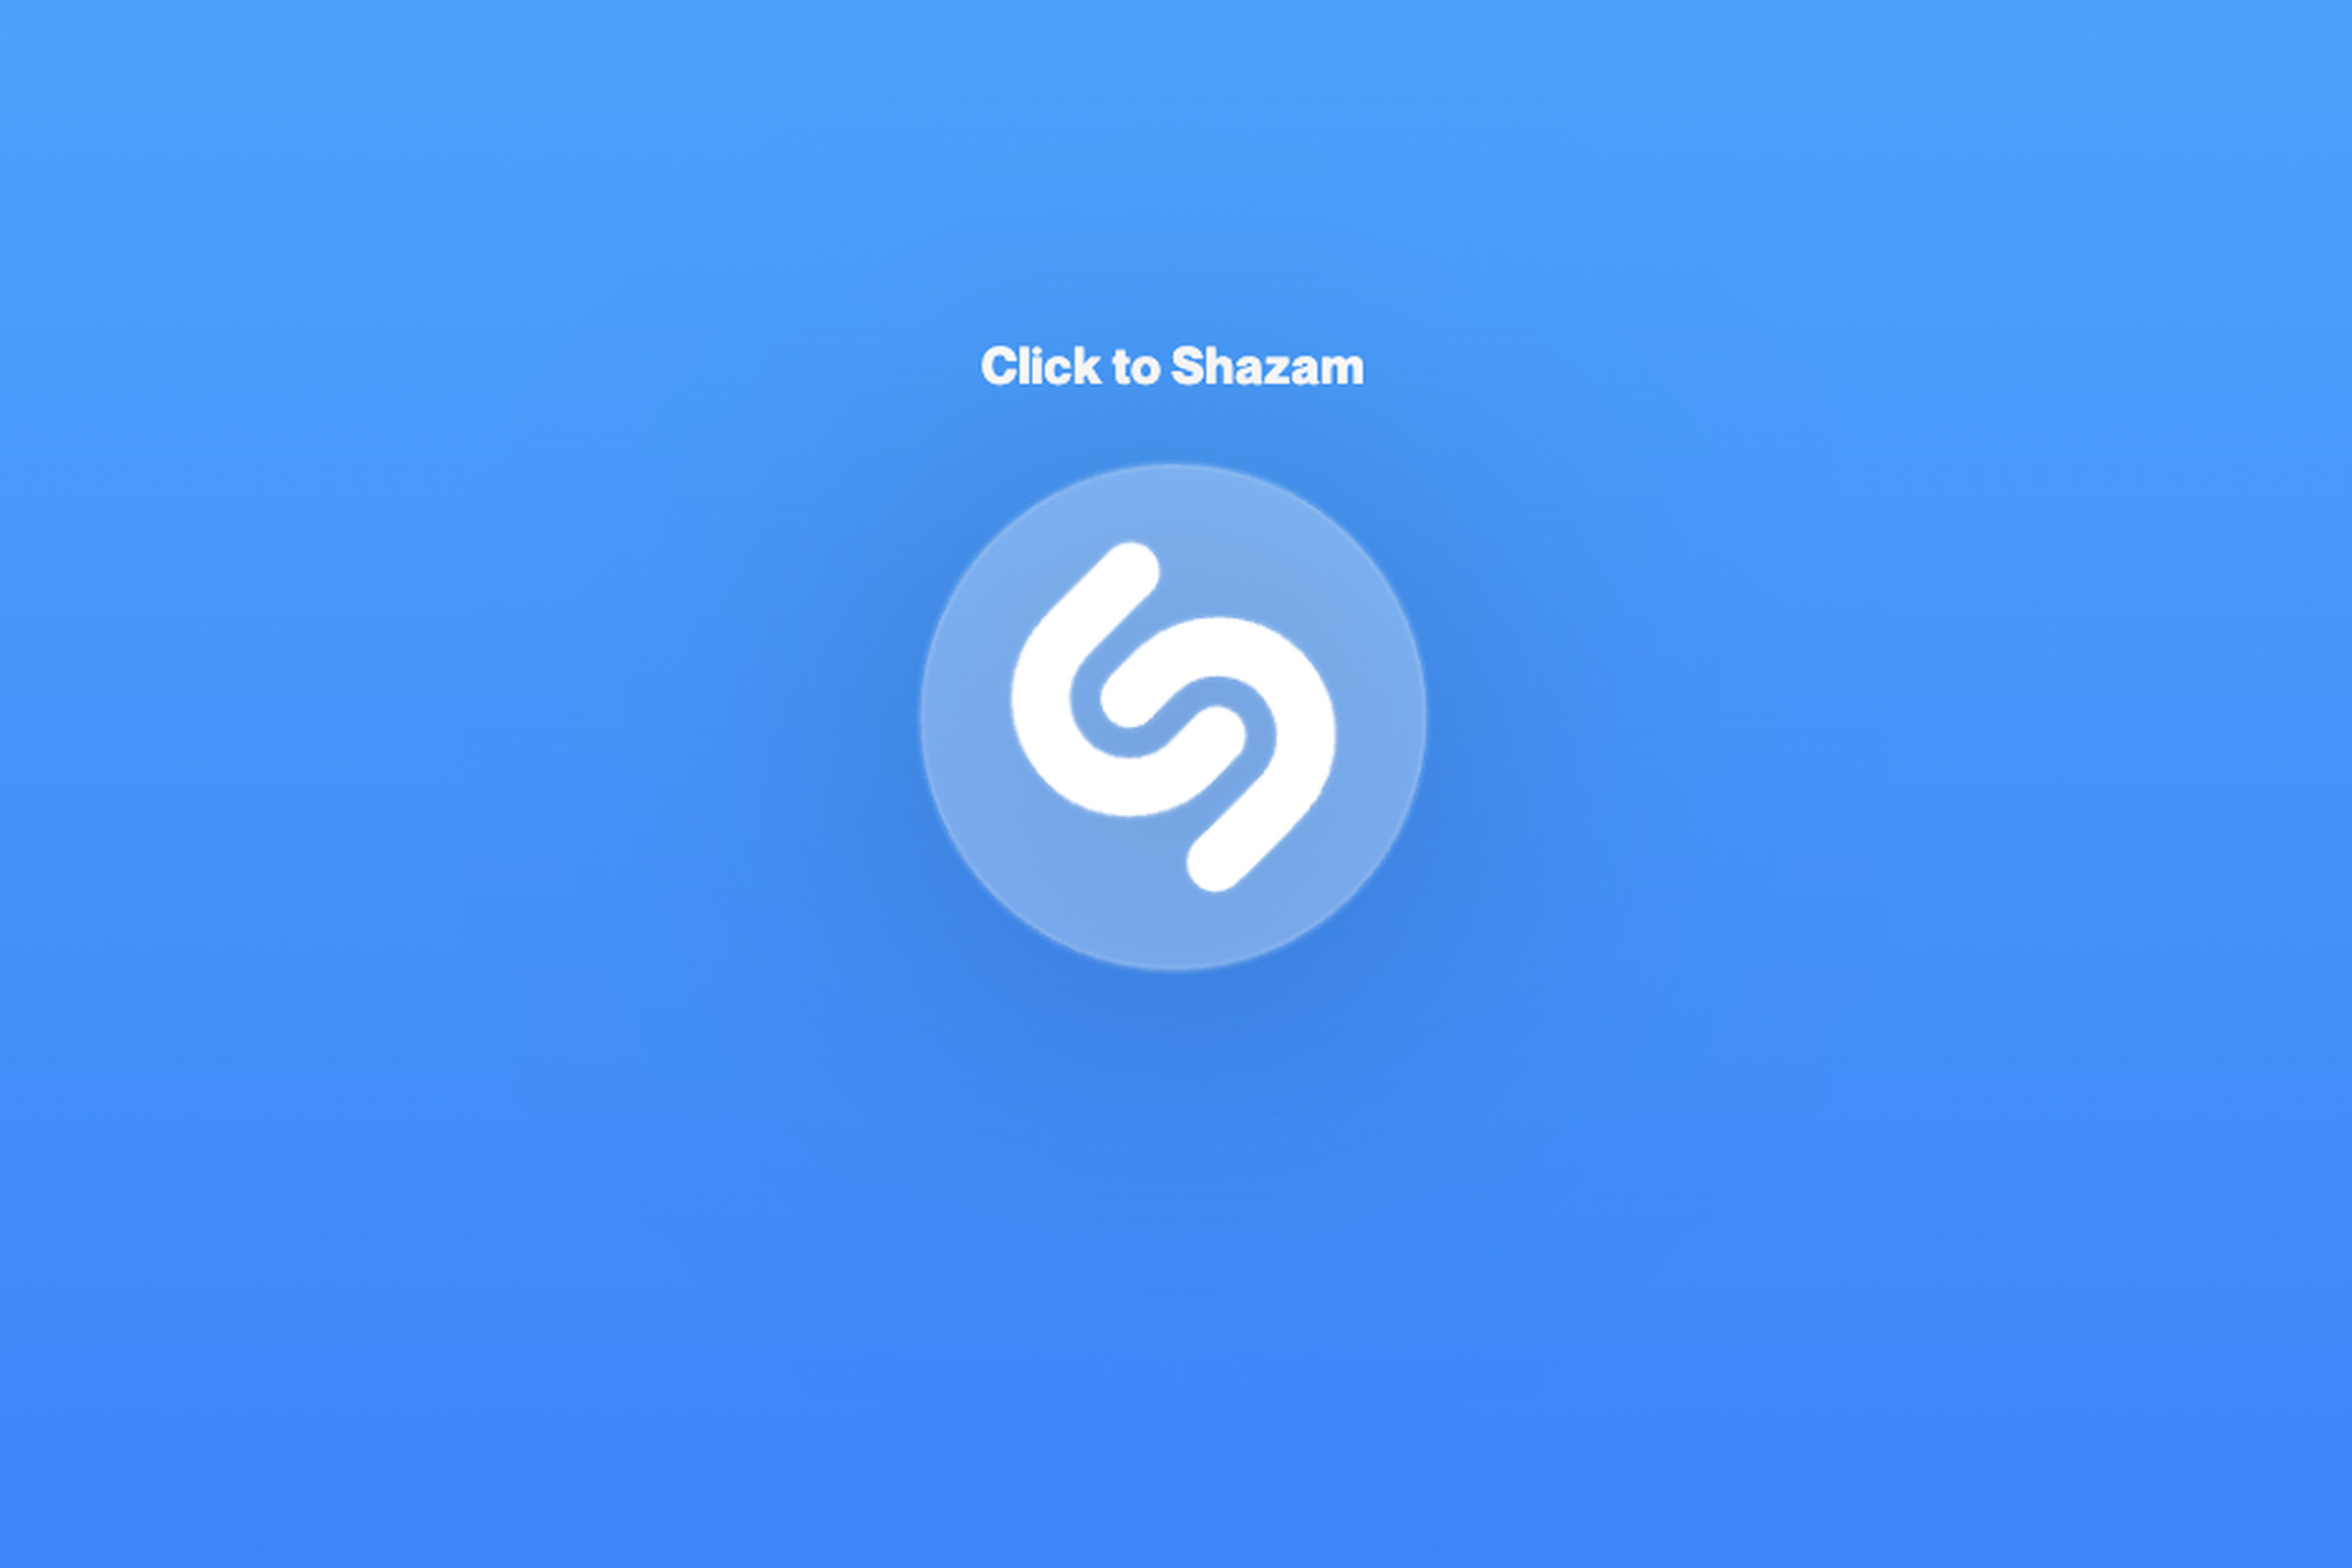 An image of the Shazam logo.